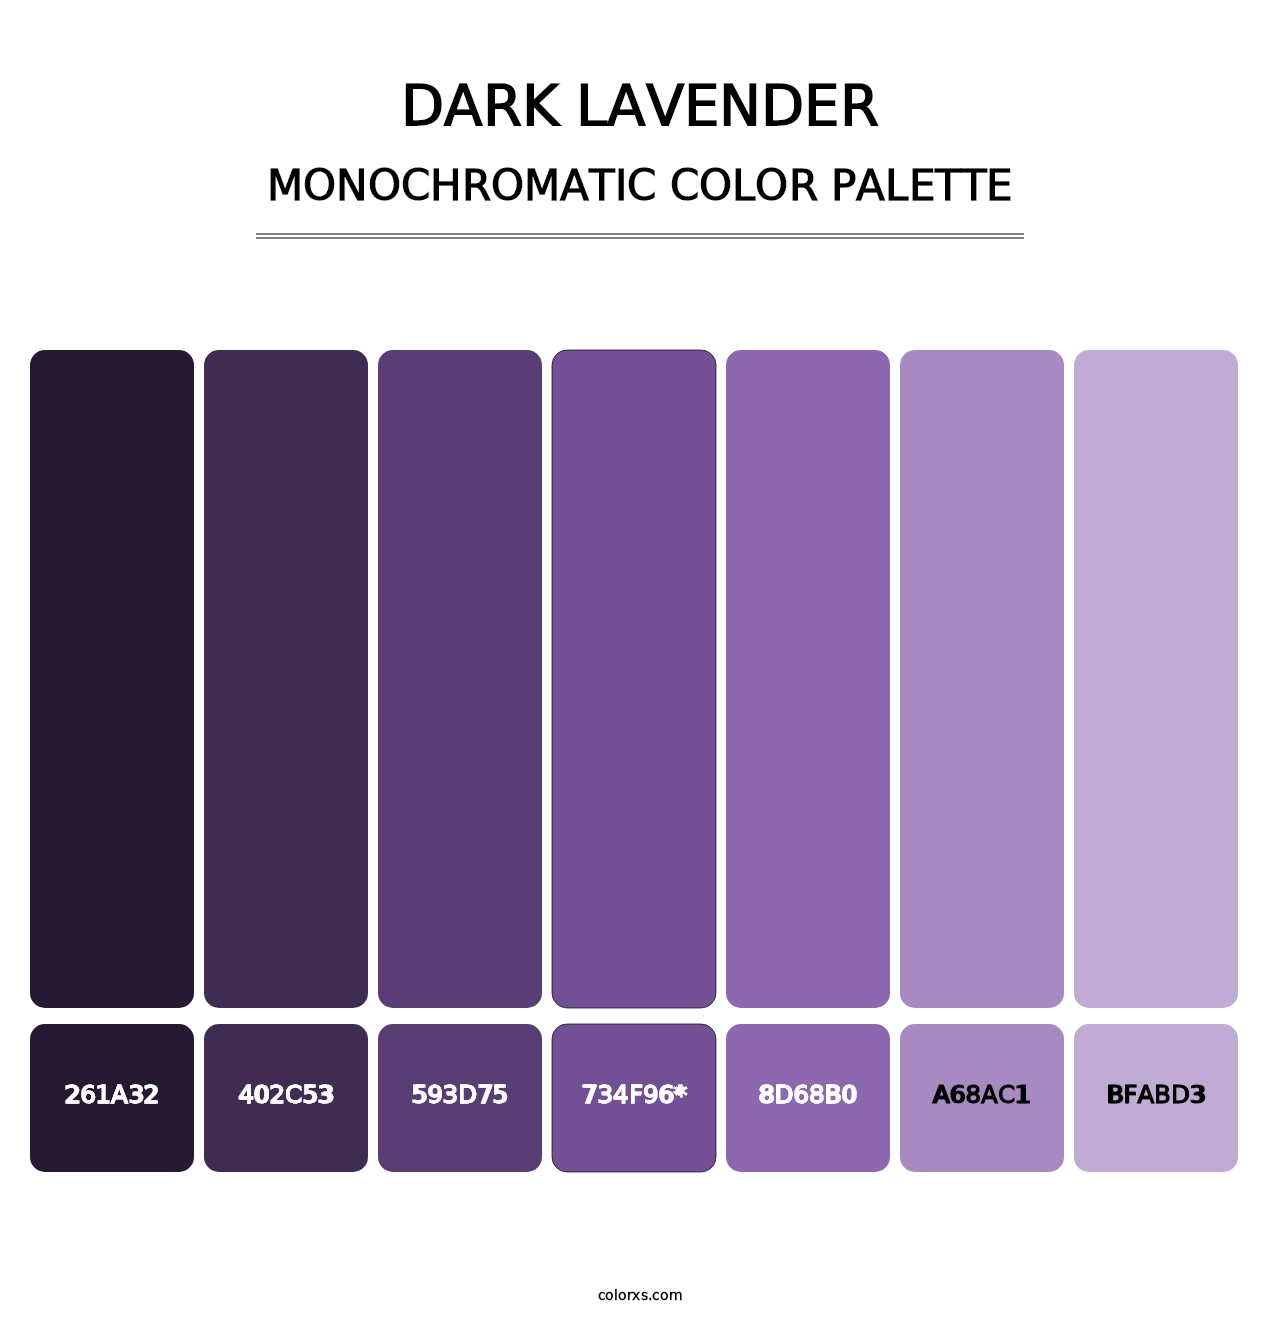 Dark Lavender - Monochromatic Color Palette